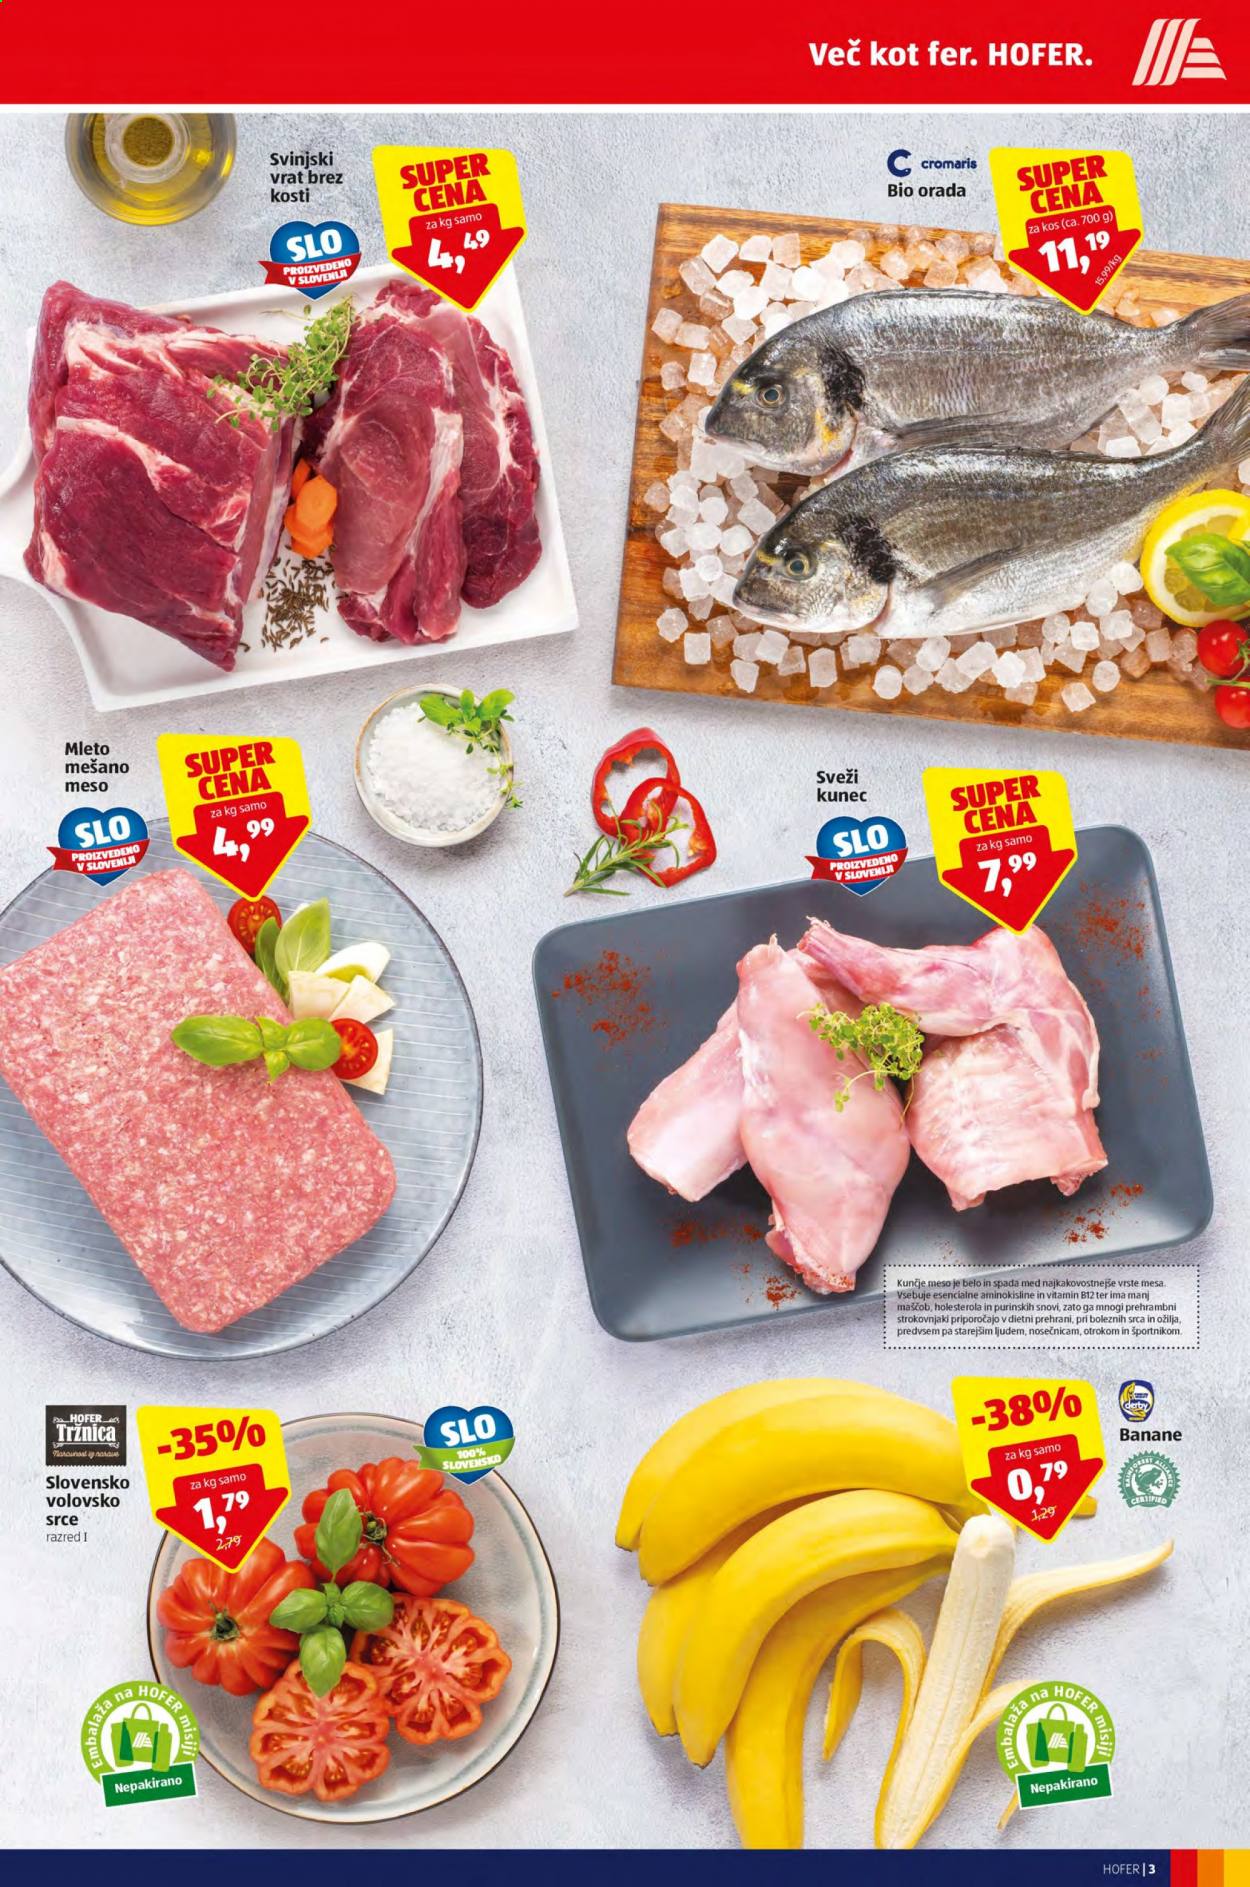 thumbnail - Hofer katalog - 23.7.2021 - 31.7.2021 - Ponudba izdelkov - svinjski vrat brez kosti, svinjski vrat, svinjsko meso, kunčje meso, orada, riba, B12. Stran 3.